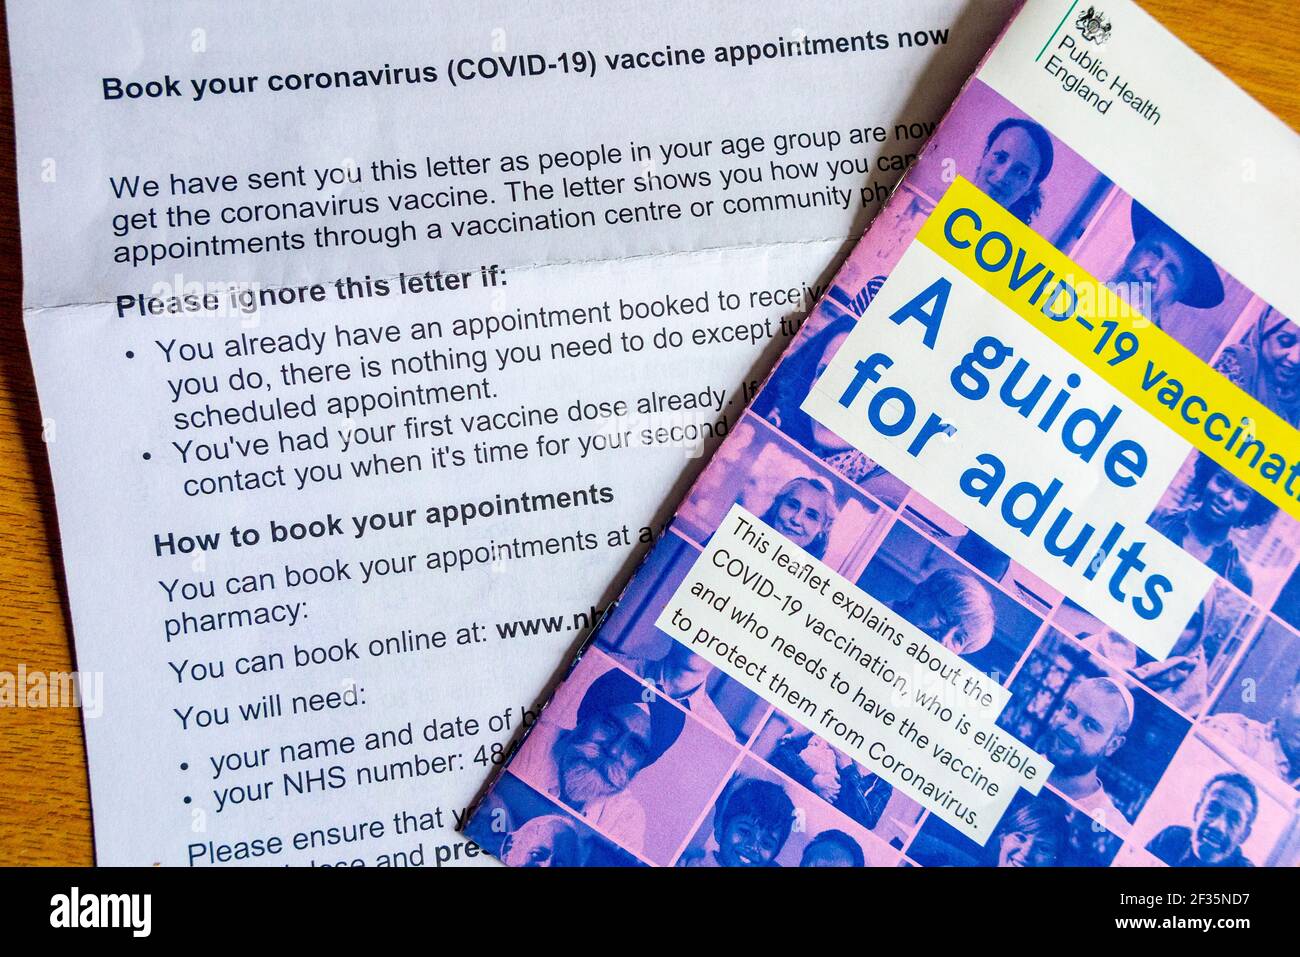 Dépliant vaccin Covid-19 UN guide pour adultes envoyé par le public Santé Angleterre avec une lettre expliquant comment réserver la vaccination du coronavirus En mars 2021 Banque D'Images